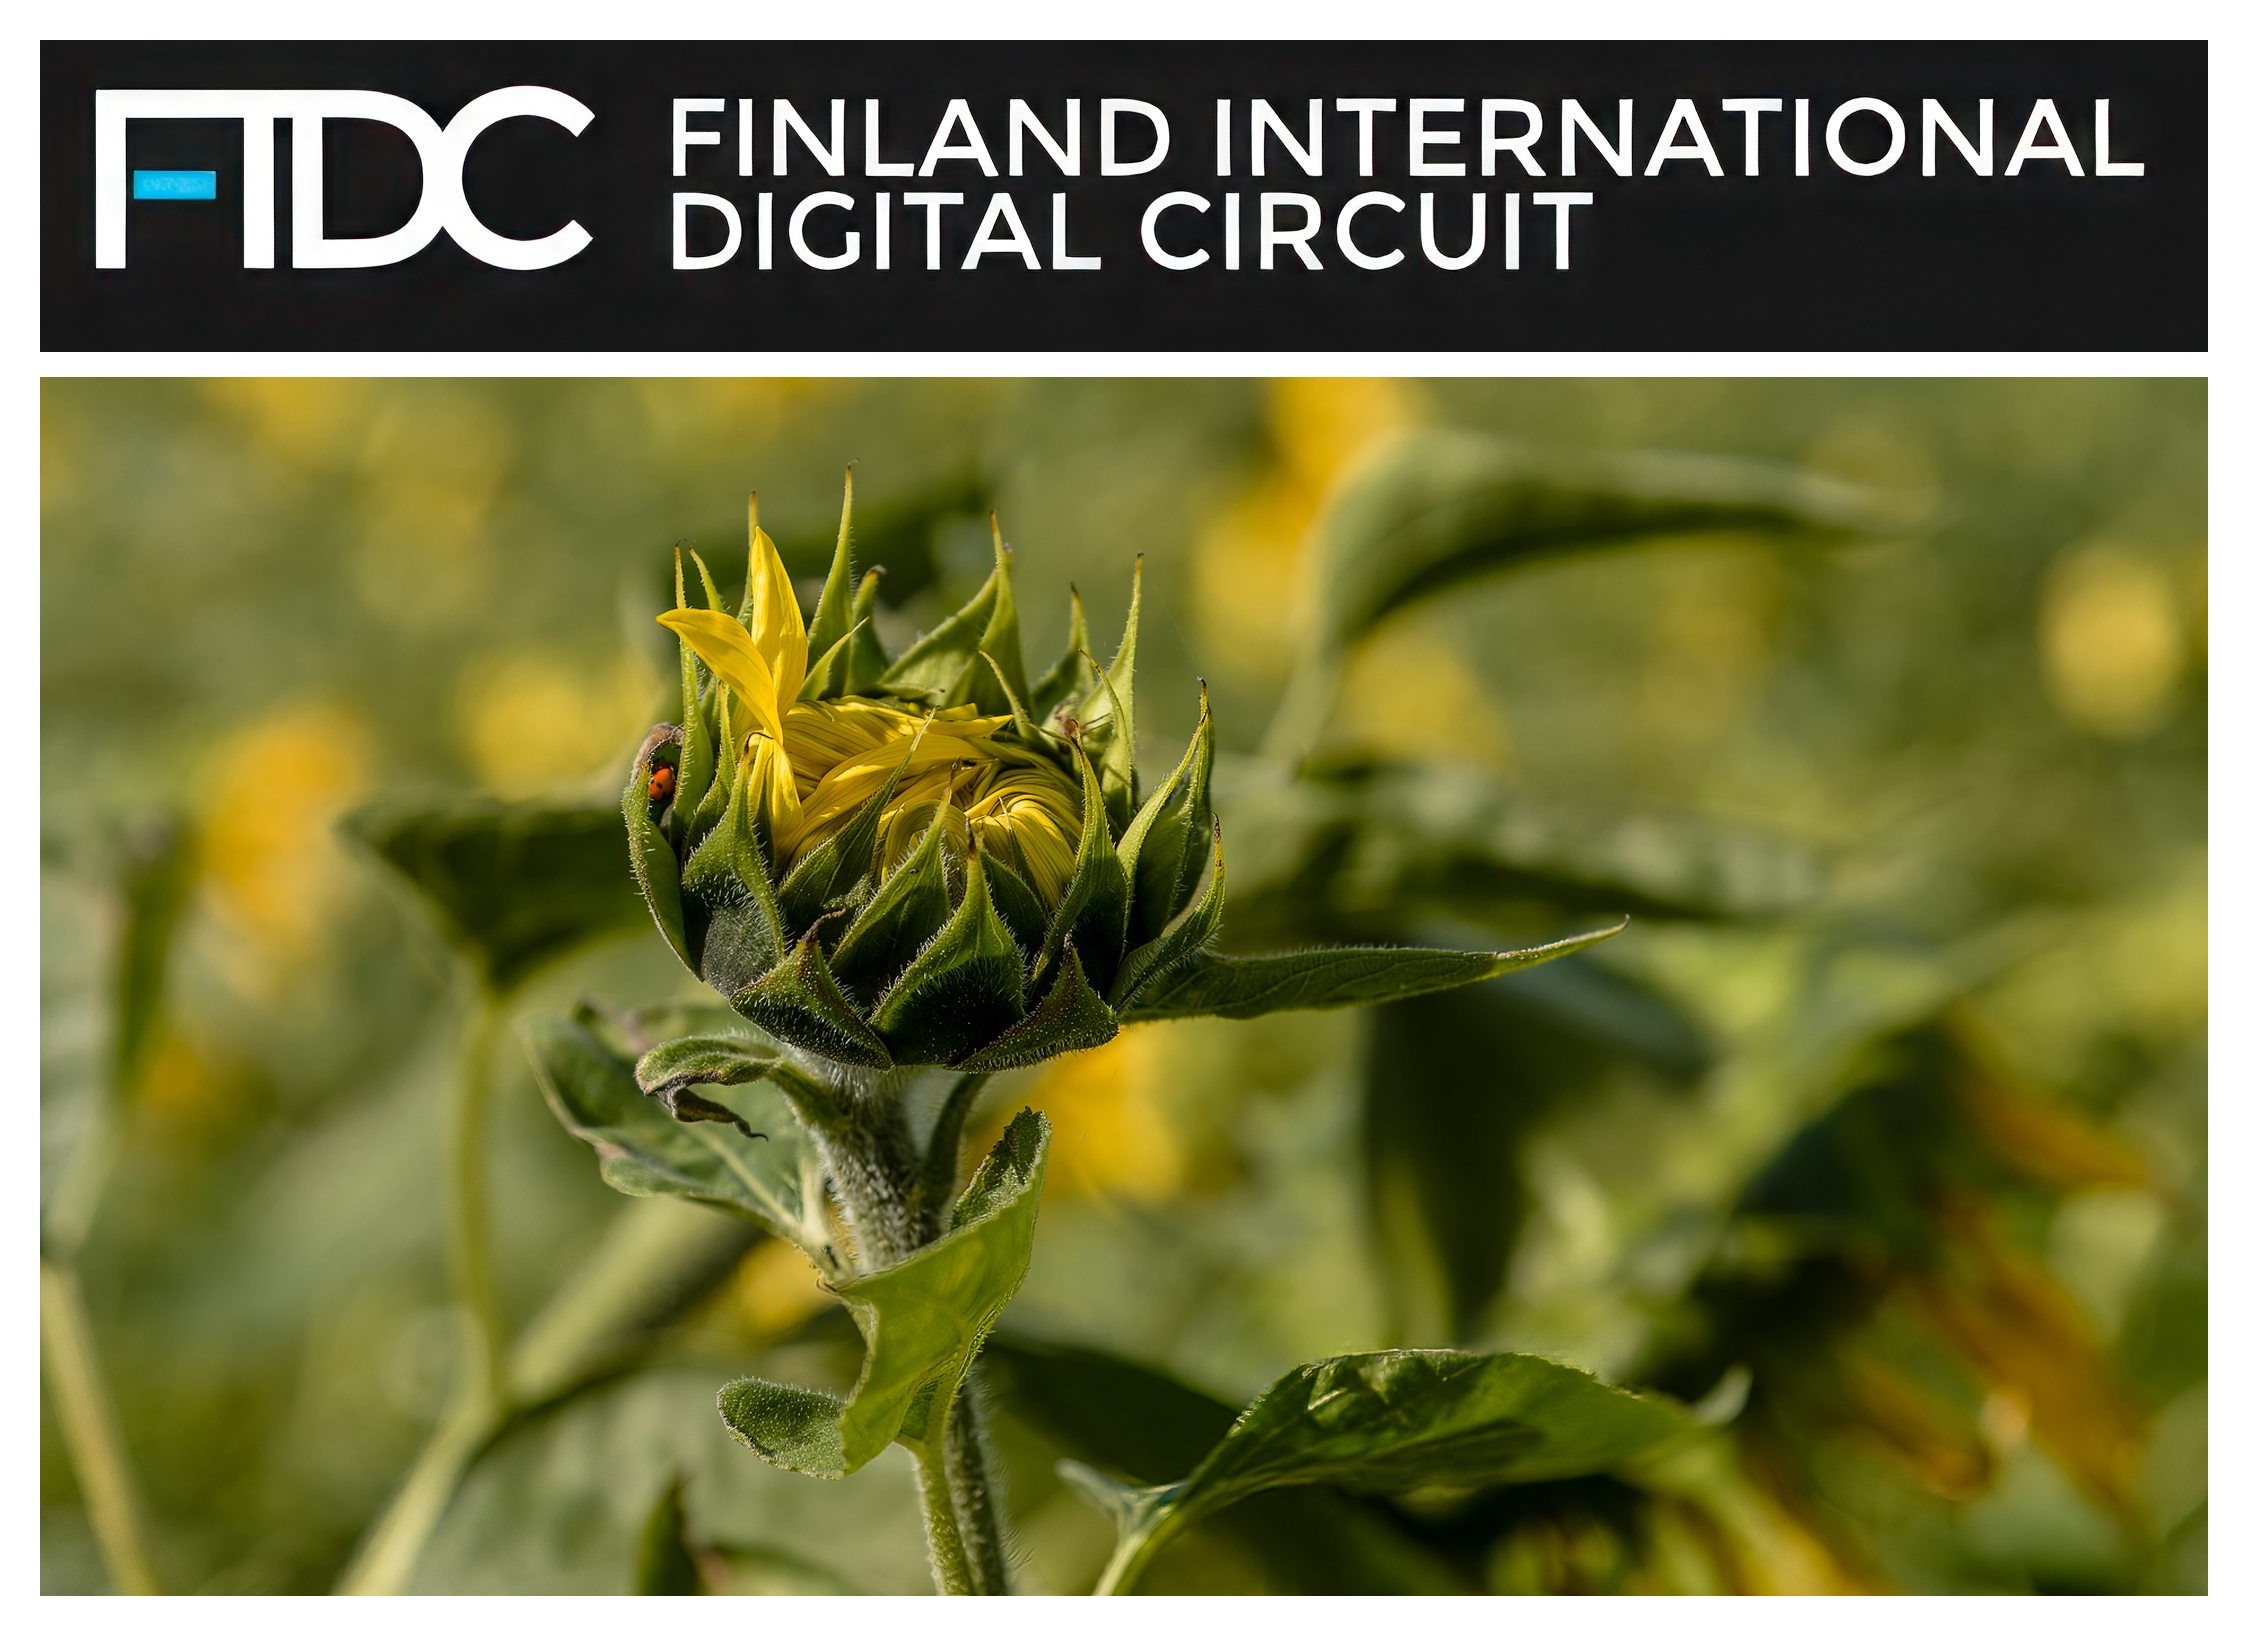 THE ASSOCIATION OF FINNISH CAMERA CLUBS; Finland International Digital Circuit; young sunflower; junge Sonnenblume; Paul Hilbert